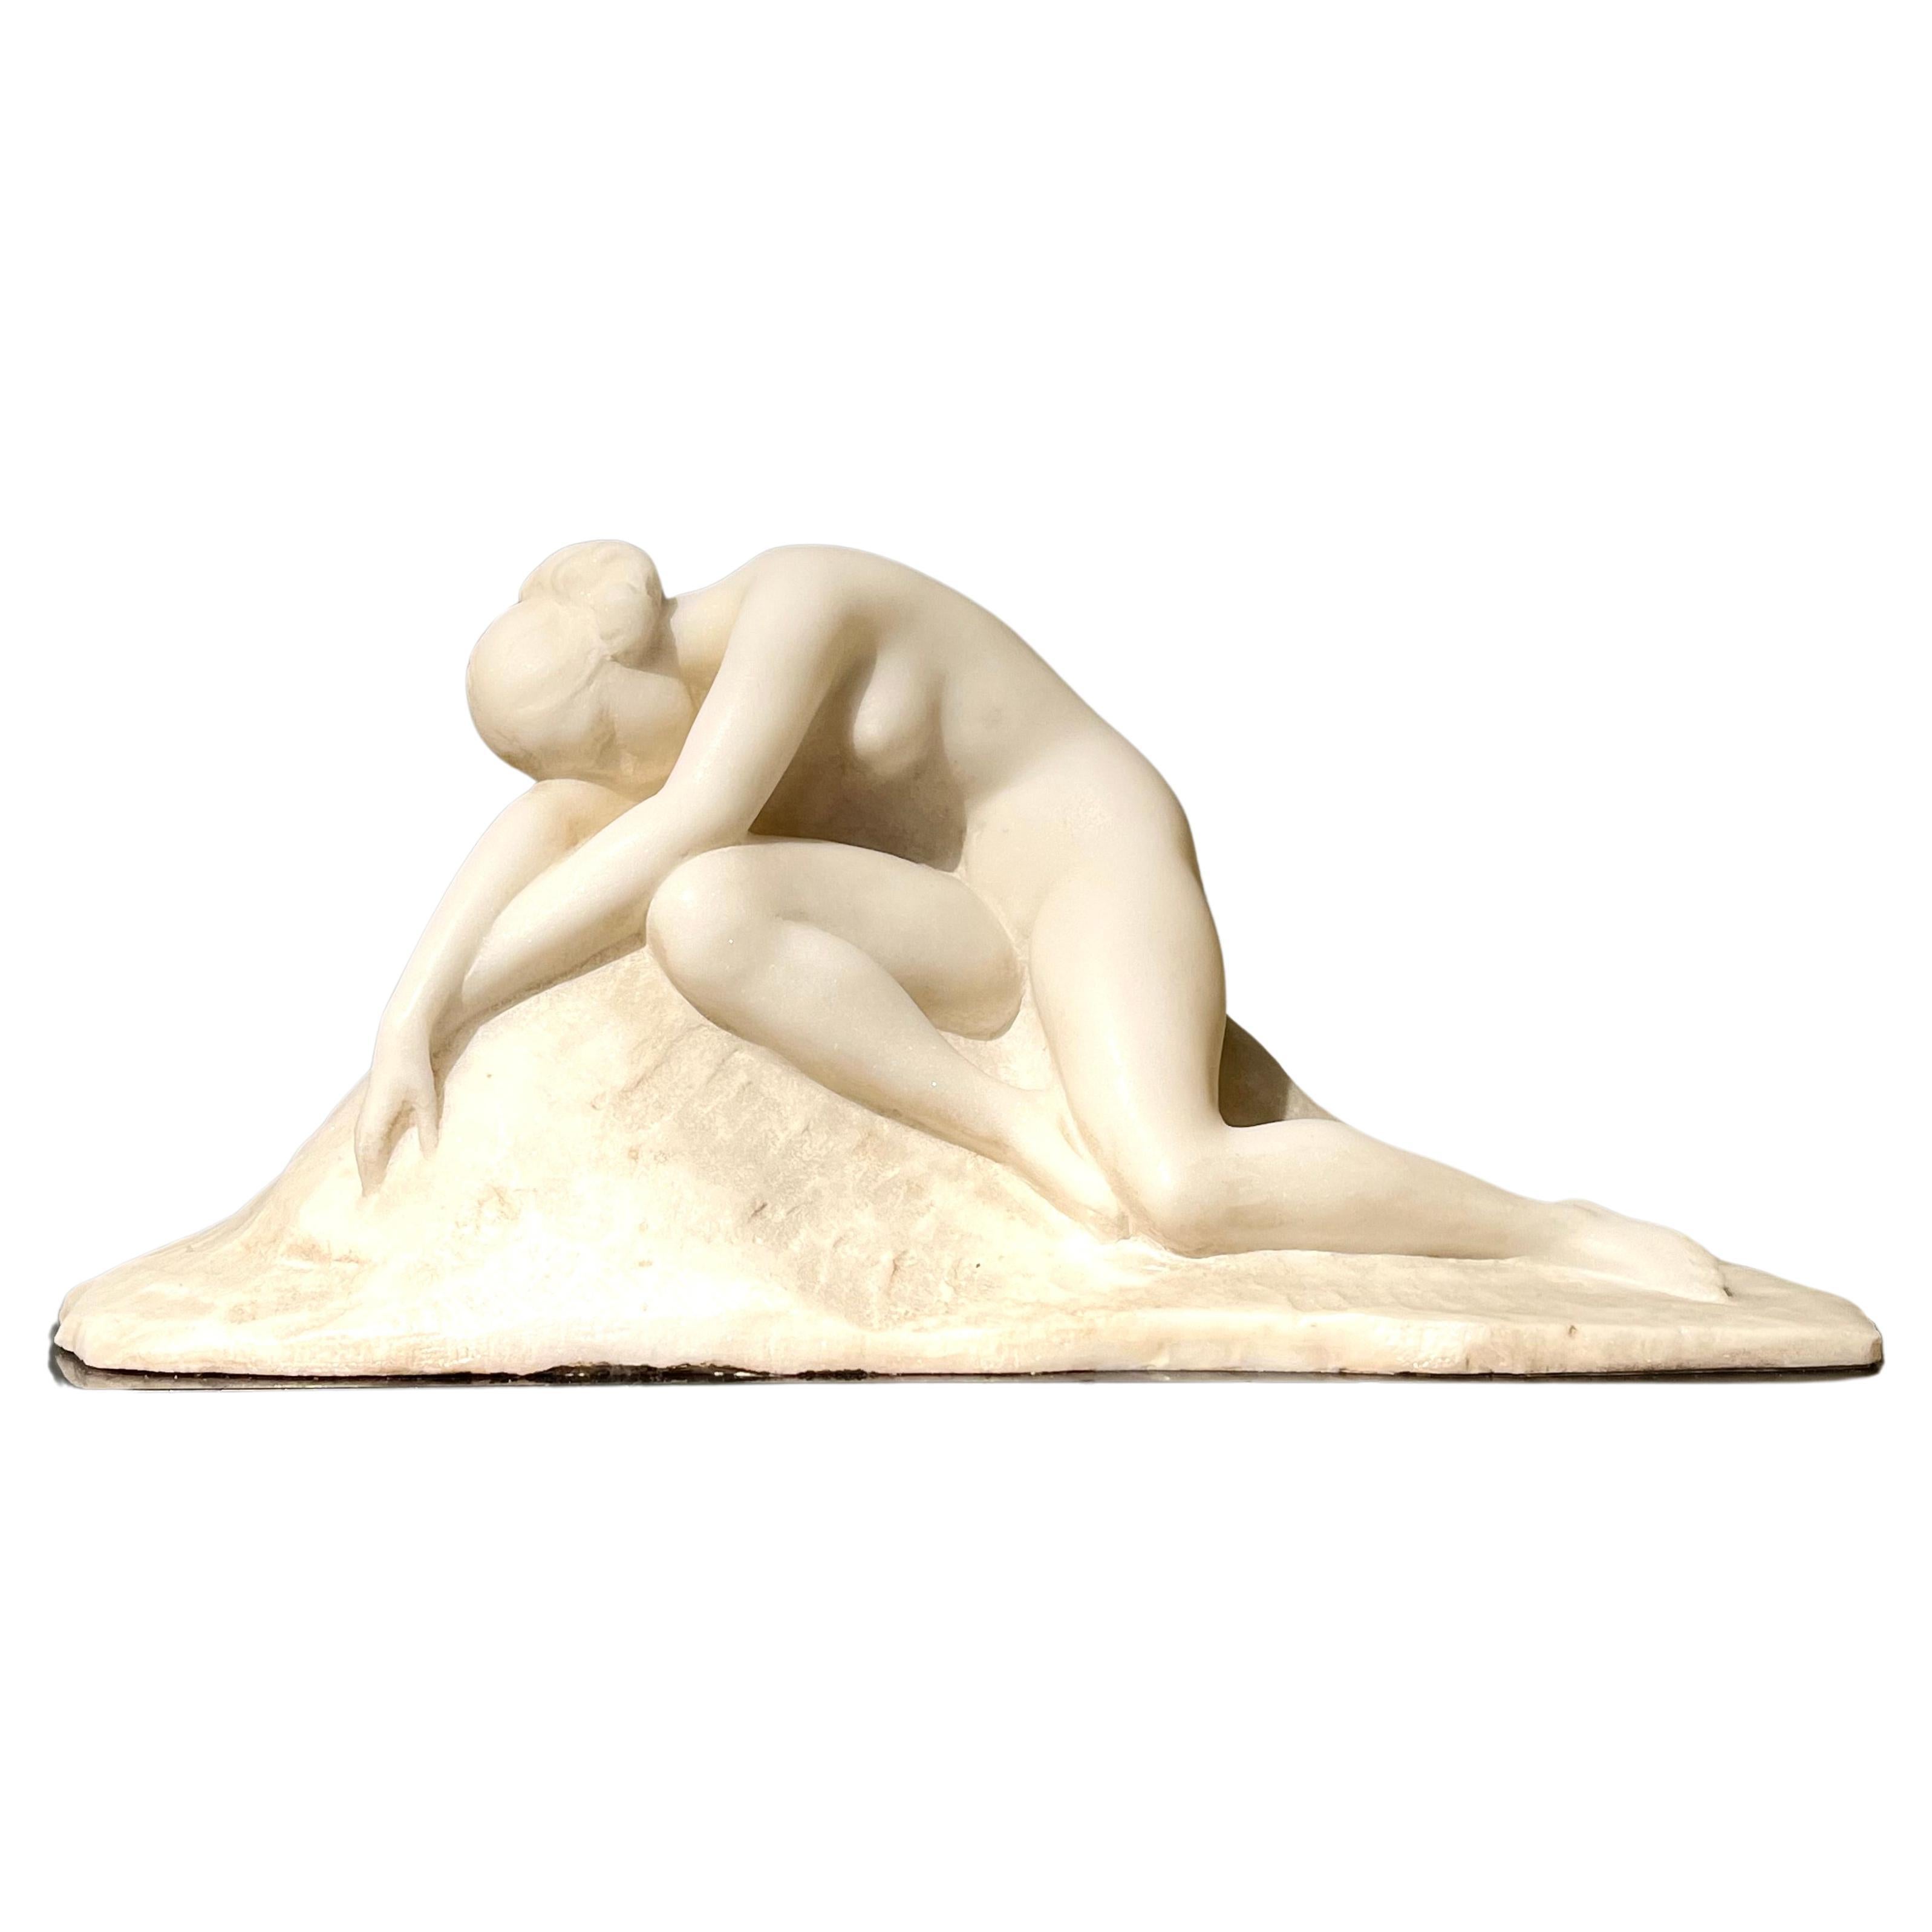 Francesco LA MONACA : "Nude", Unique Art nouveau marble sculpture, c. 1910-15